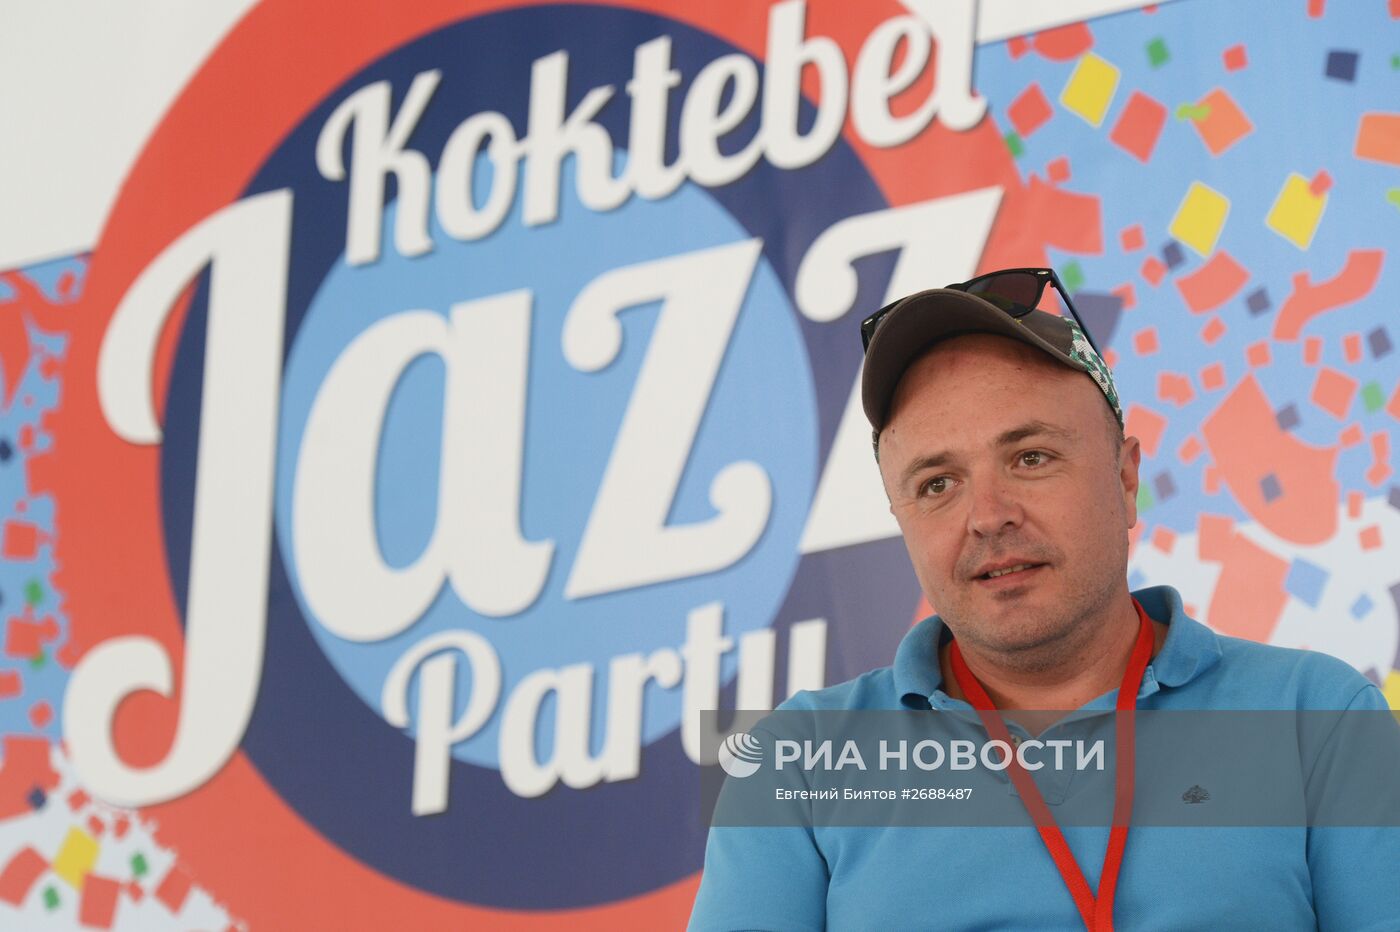 Международный джазовый фестиваль Koktebel Jazz Party. Третий день